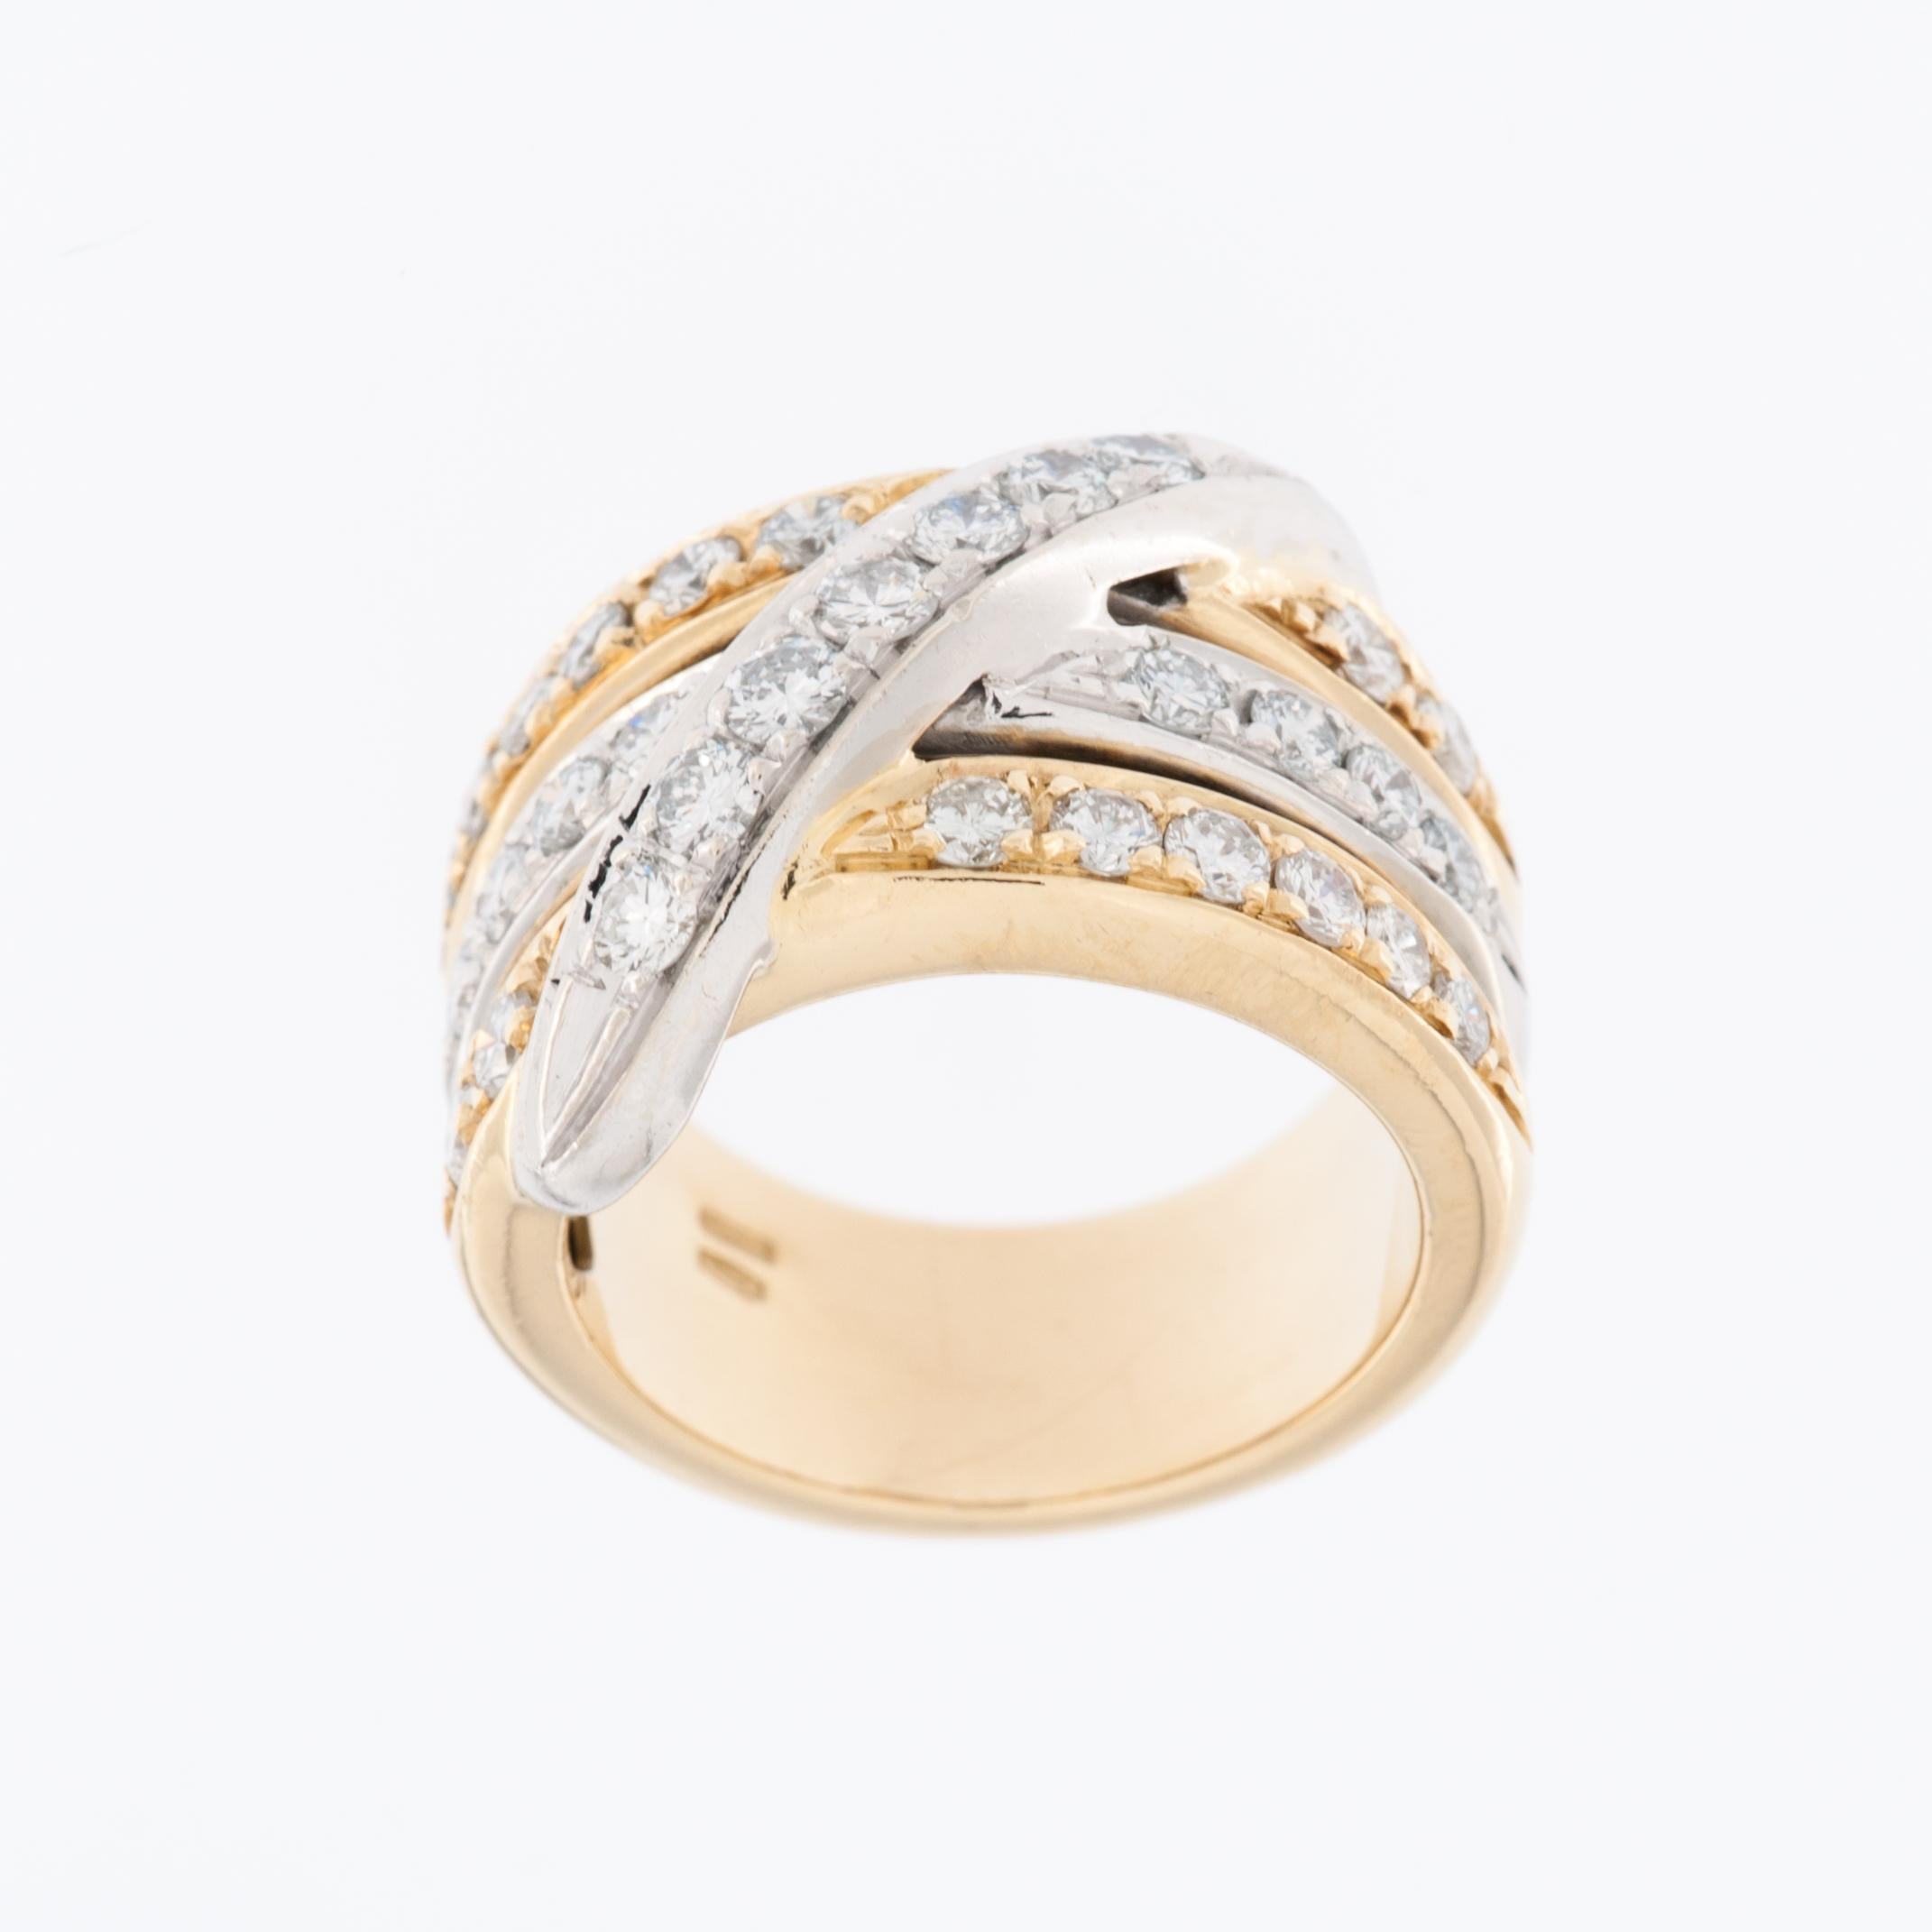 La bague contemporaine en diamant de style italien présente un anneau croisé en or jaune et blanc 18kt avec un sertissage à griffes. Ce design combine deux couleurs d'or différentes, le jaune et le blanc, créant ainsi un look unique et moderne.

Le